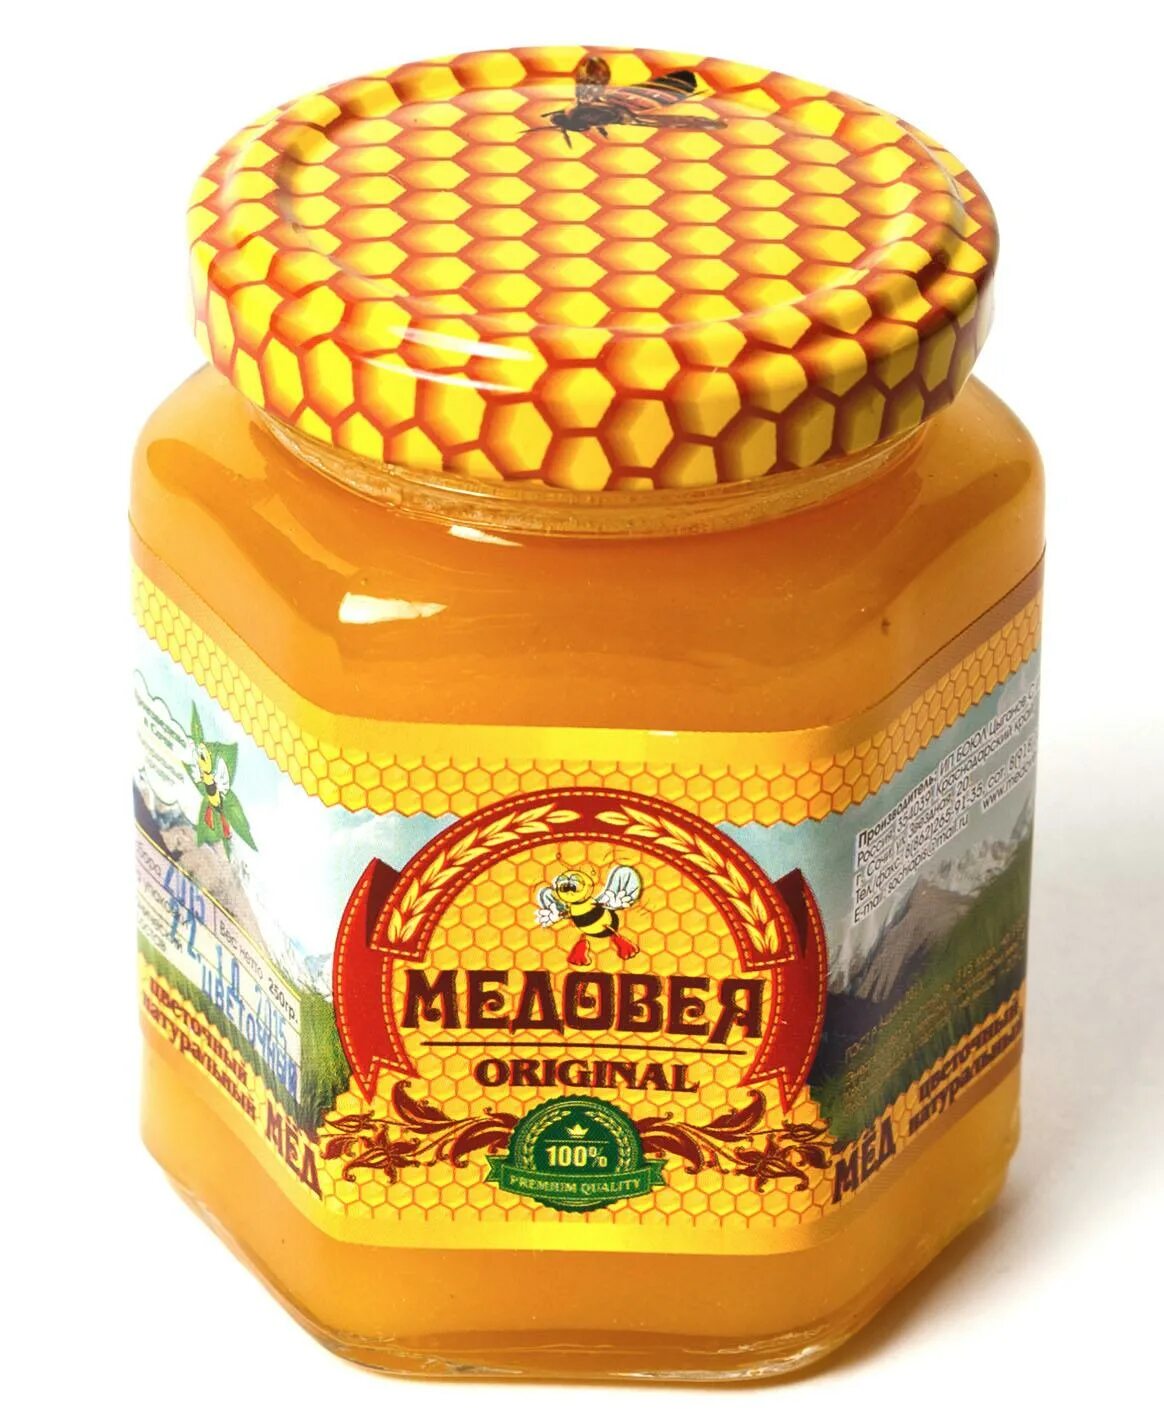 Липовый мед. Пчелиная продукция. Продукты пчеловодства. Медовая продукция. Купить мед в аптеке